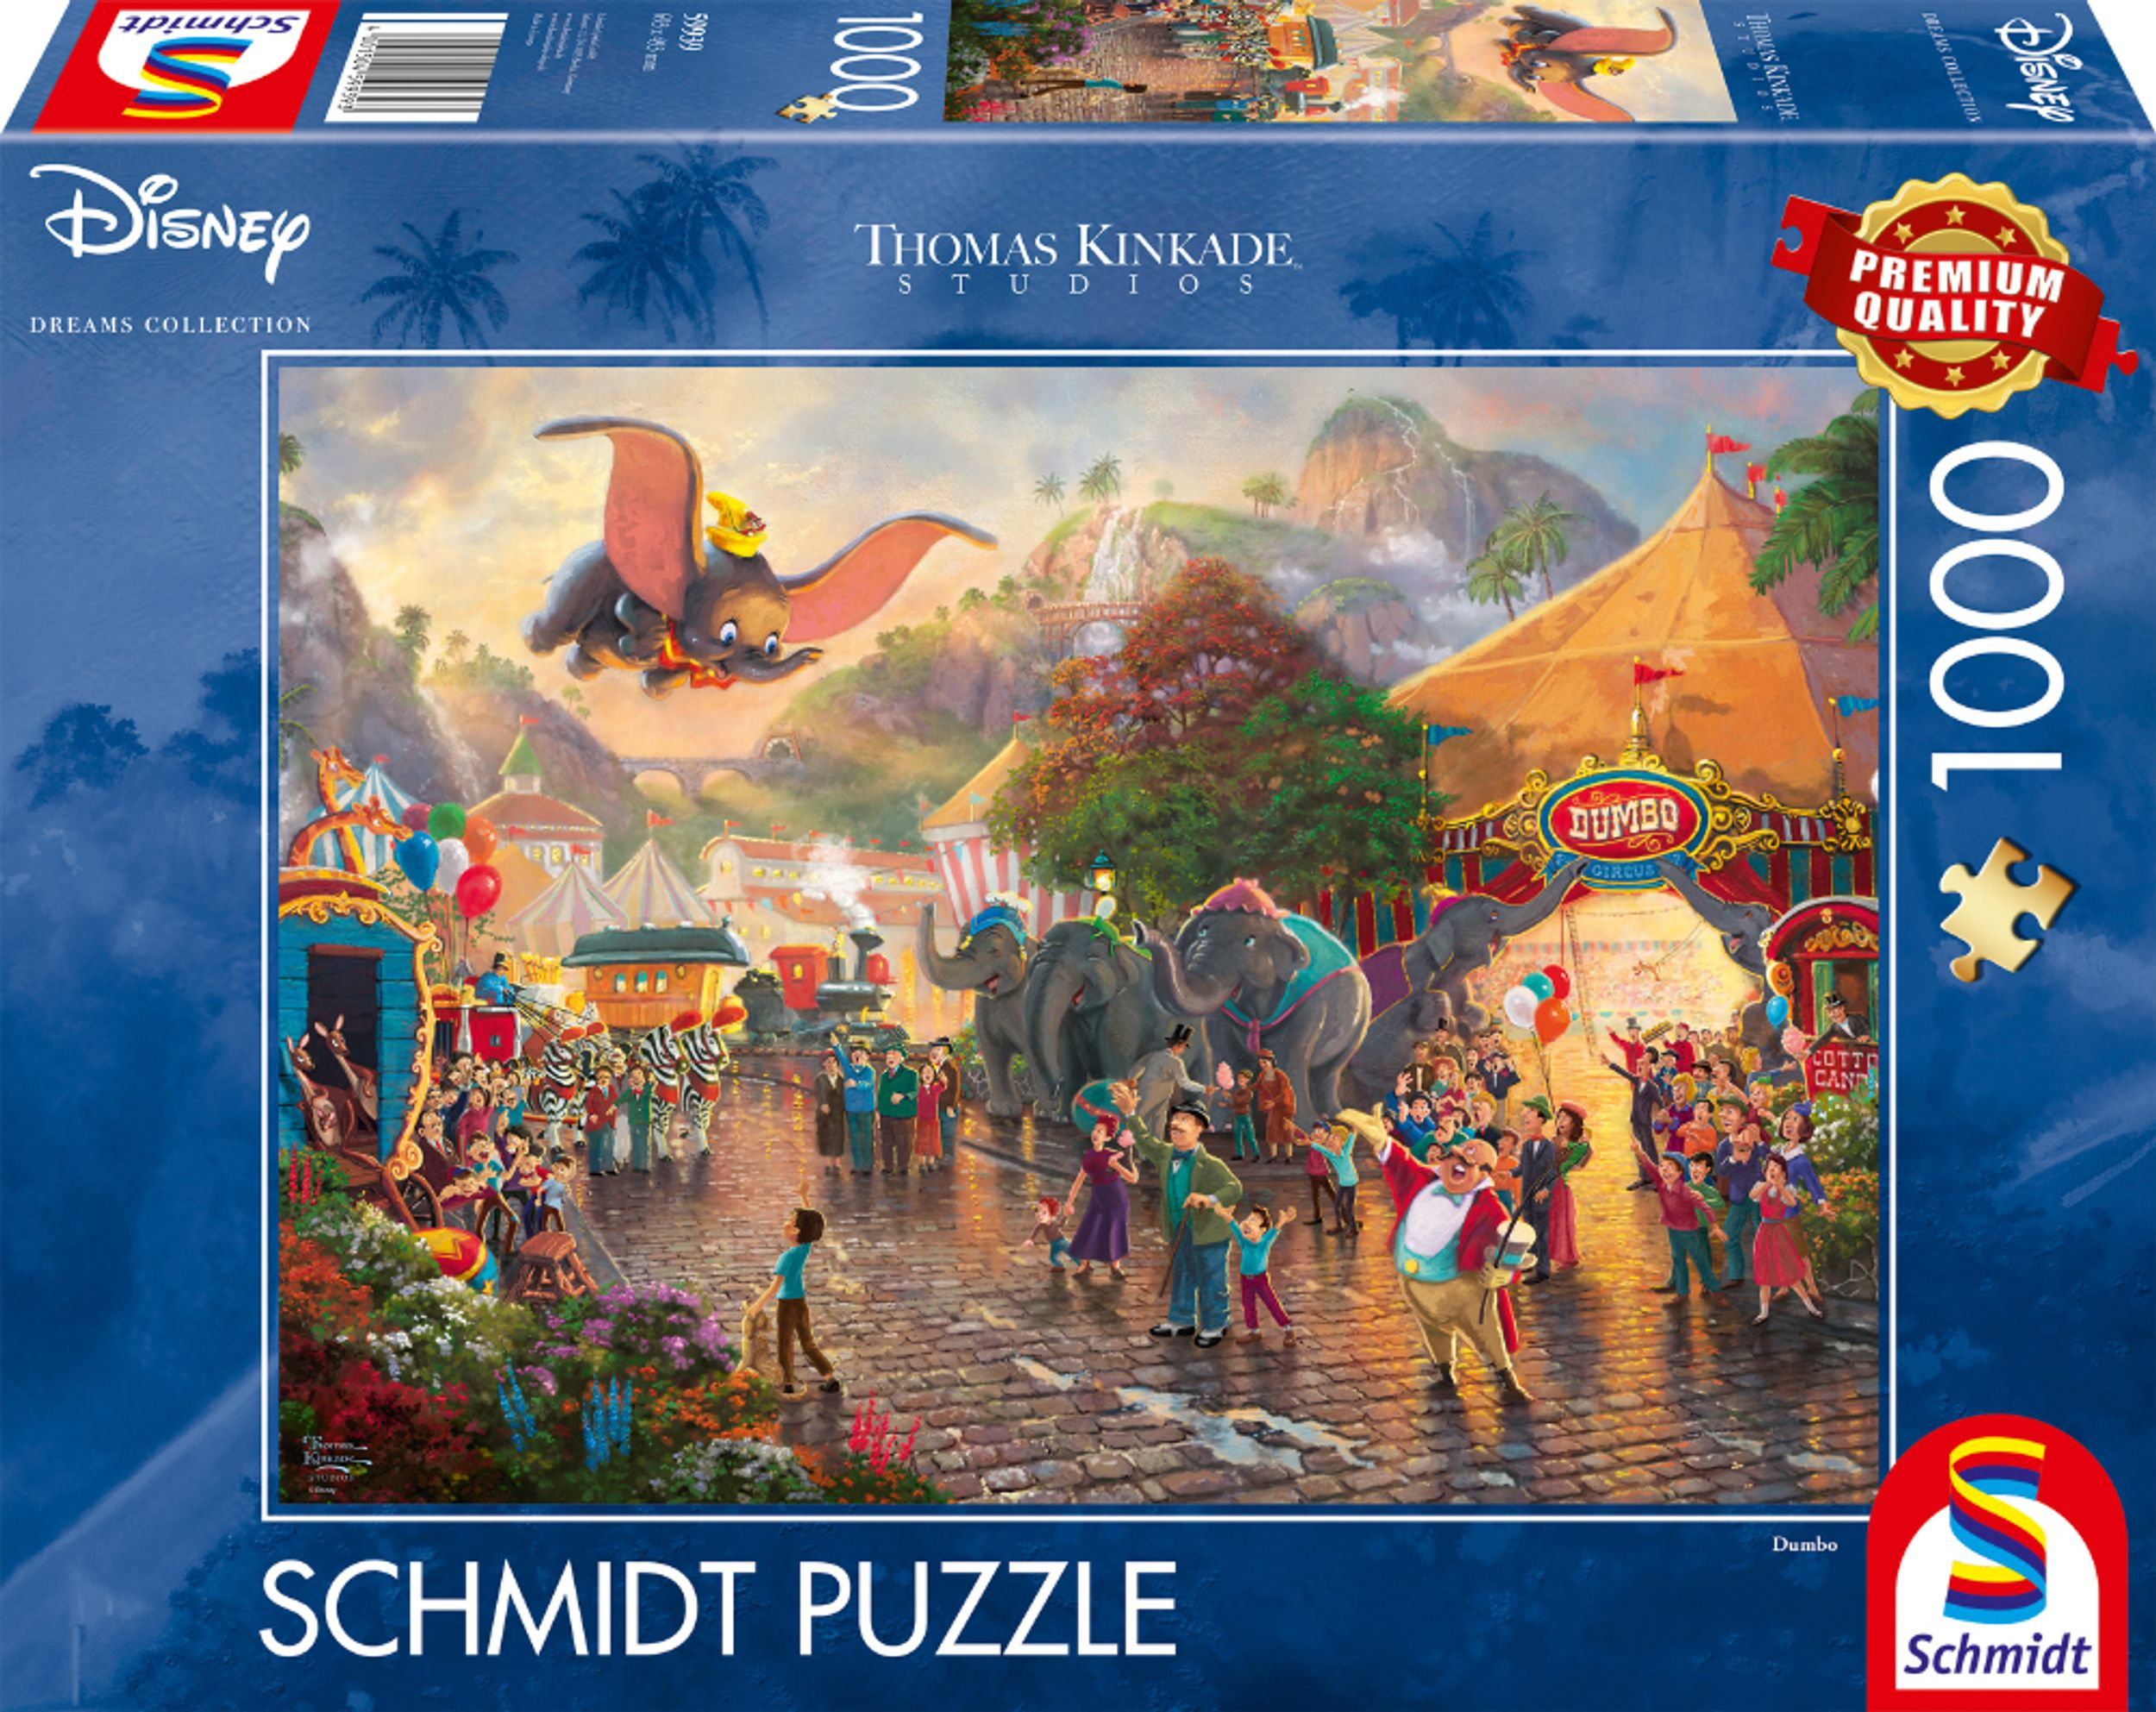 Dumbo SPIELE SCHMIDT Puzzle